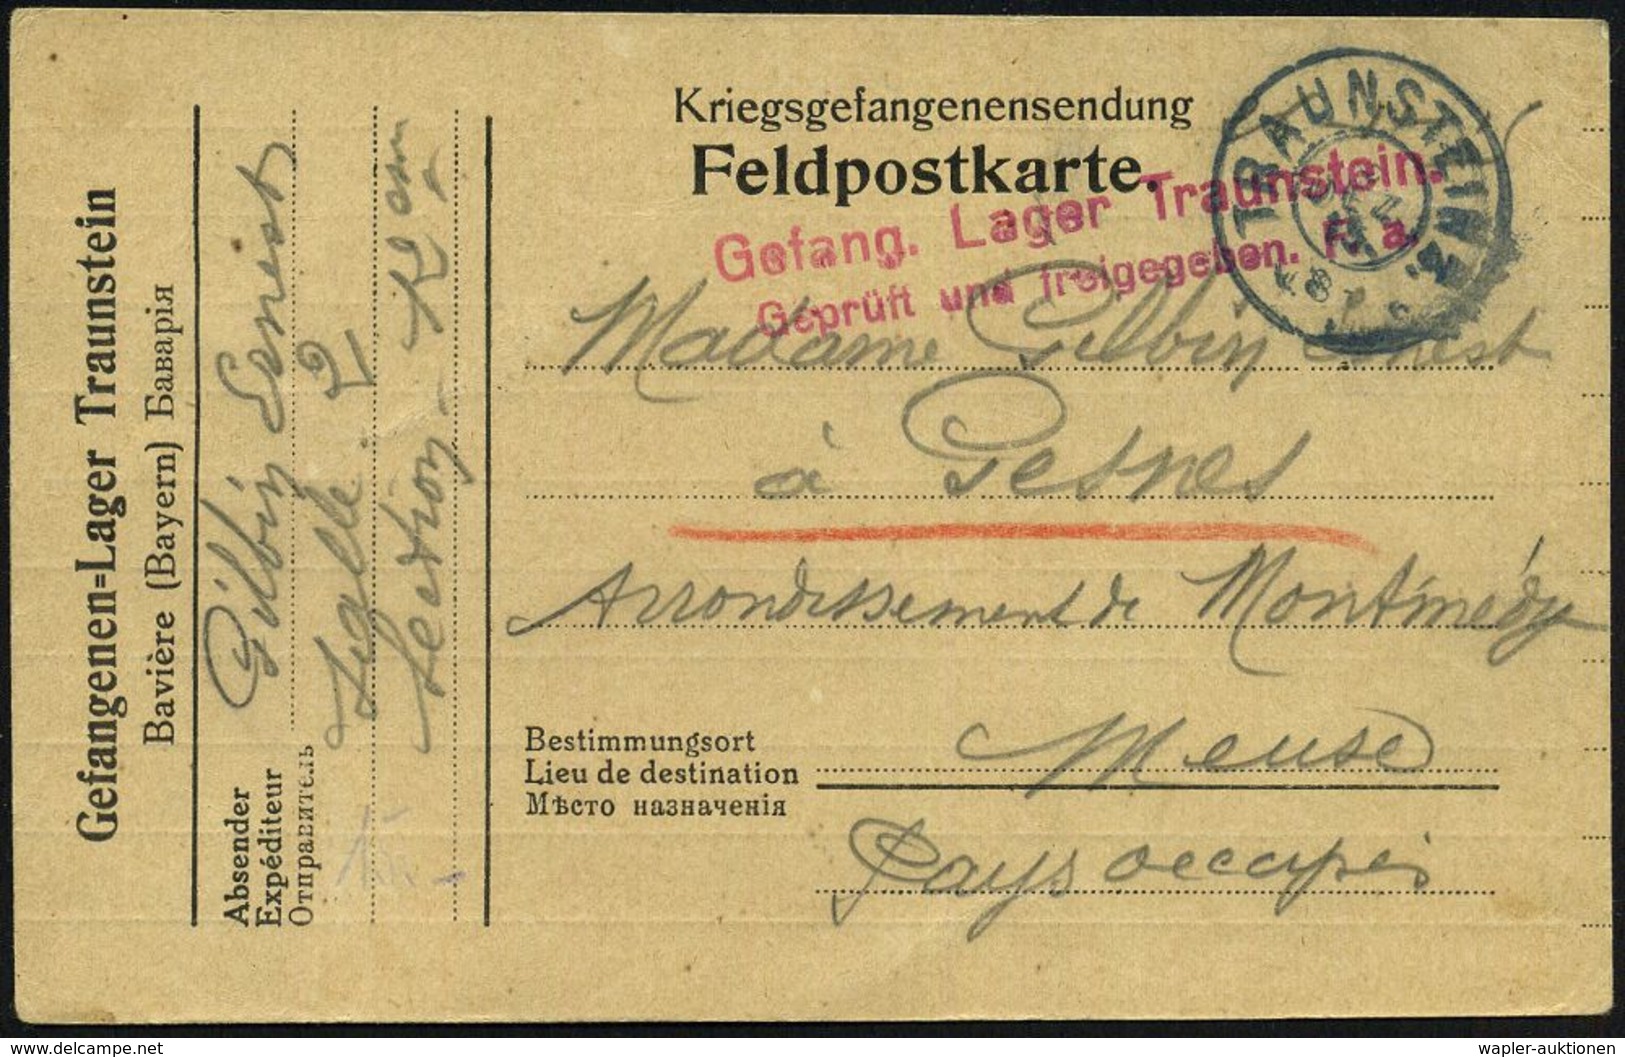 TRAUNSTEIN 2. 1915 (6.12.) Bayer. 2K + Rotviol. Seltener Zensur-2L: Gefang. Lager Traunstein/ Geprüft U. Freigegeben. F. - Croix-Rouge